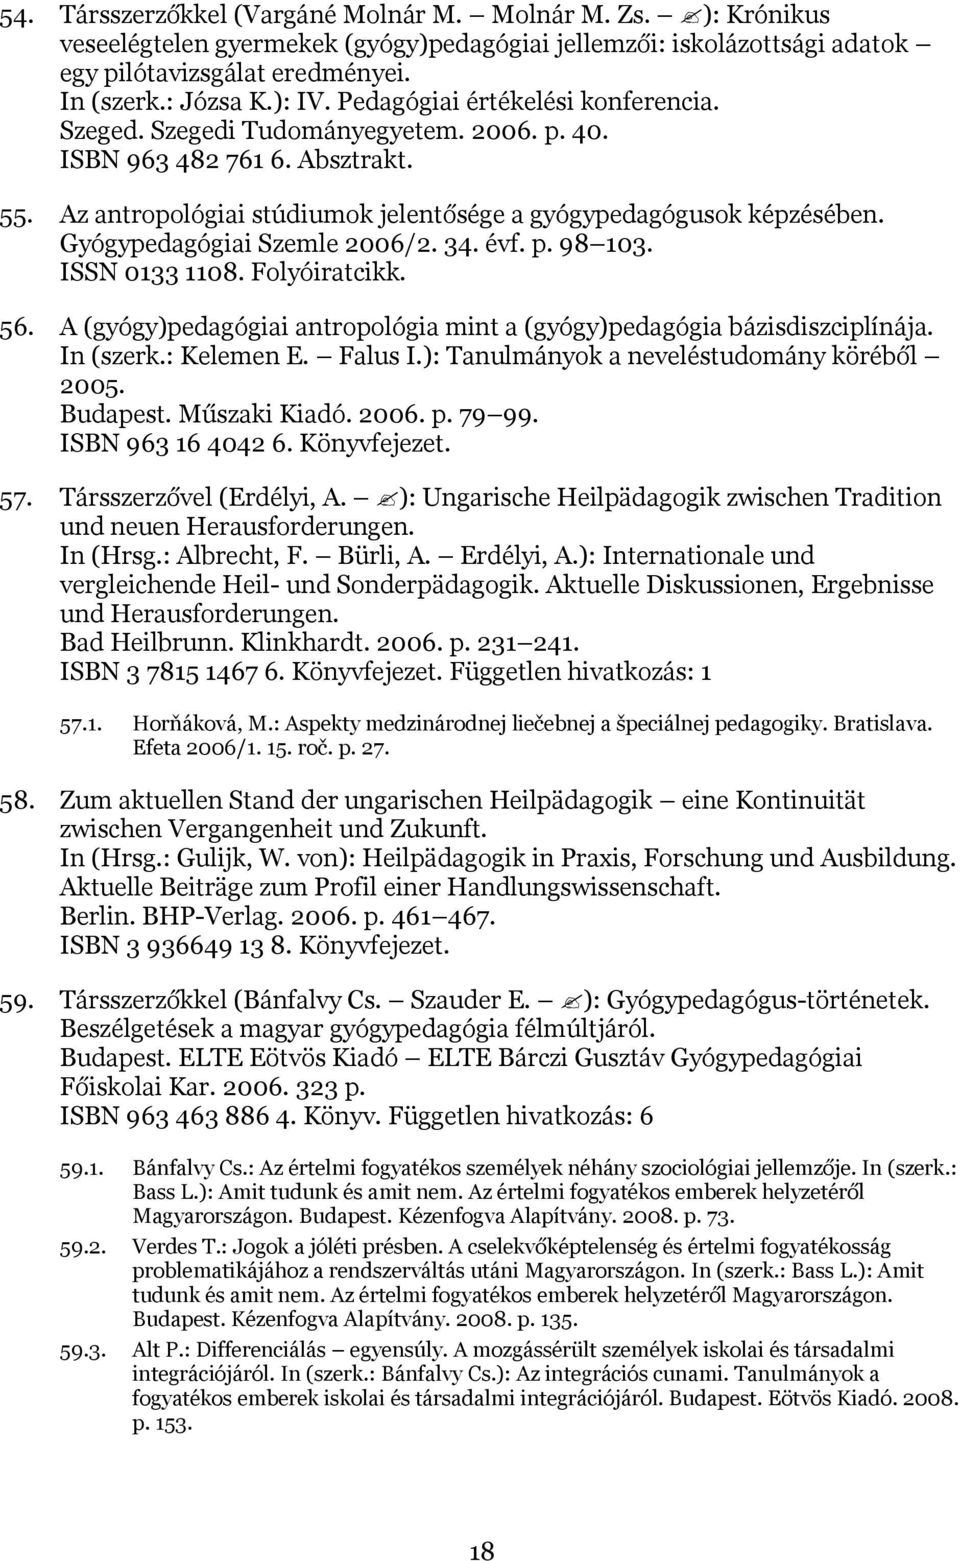 Gyógypedagógiai Szemle 2006/2. 34. évf. p. 98 103. ISSN 0133 1108. Folyóiratcikk. 56. A (gyógy)pedagógiai antropológia mint a (gyógy)pedagógia bázisdiszciplínája. In (szerk.: Kelemen E. Falus I.